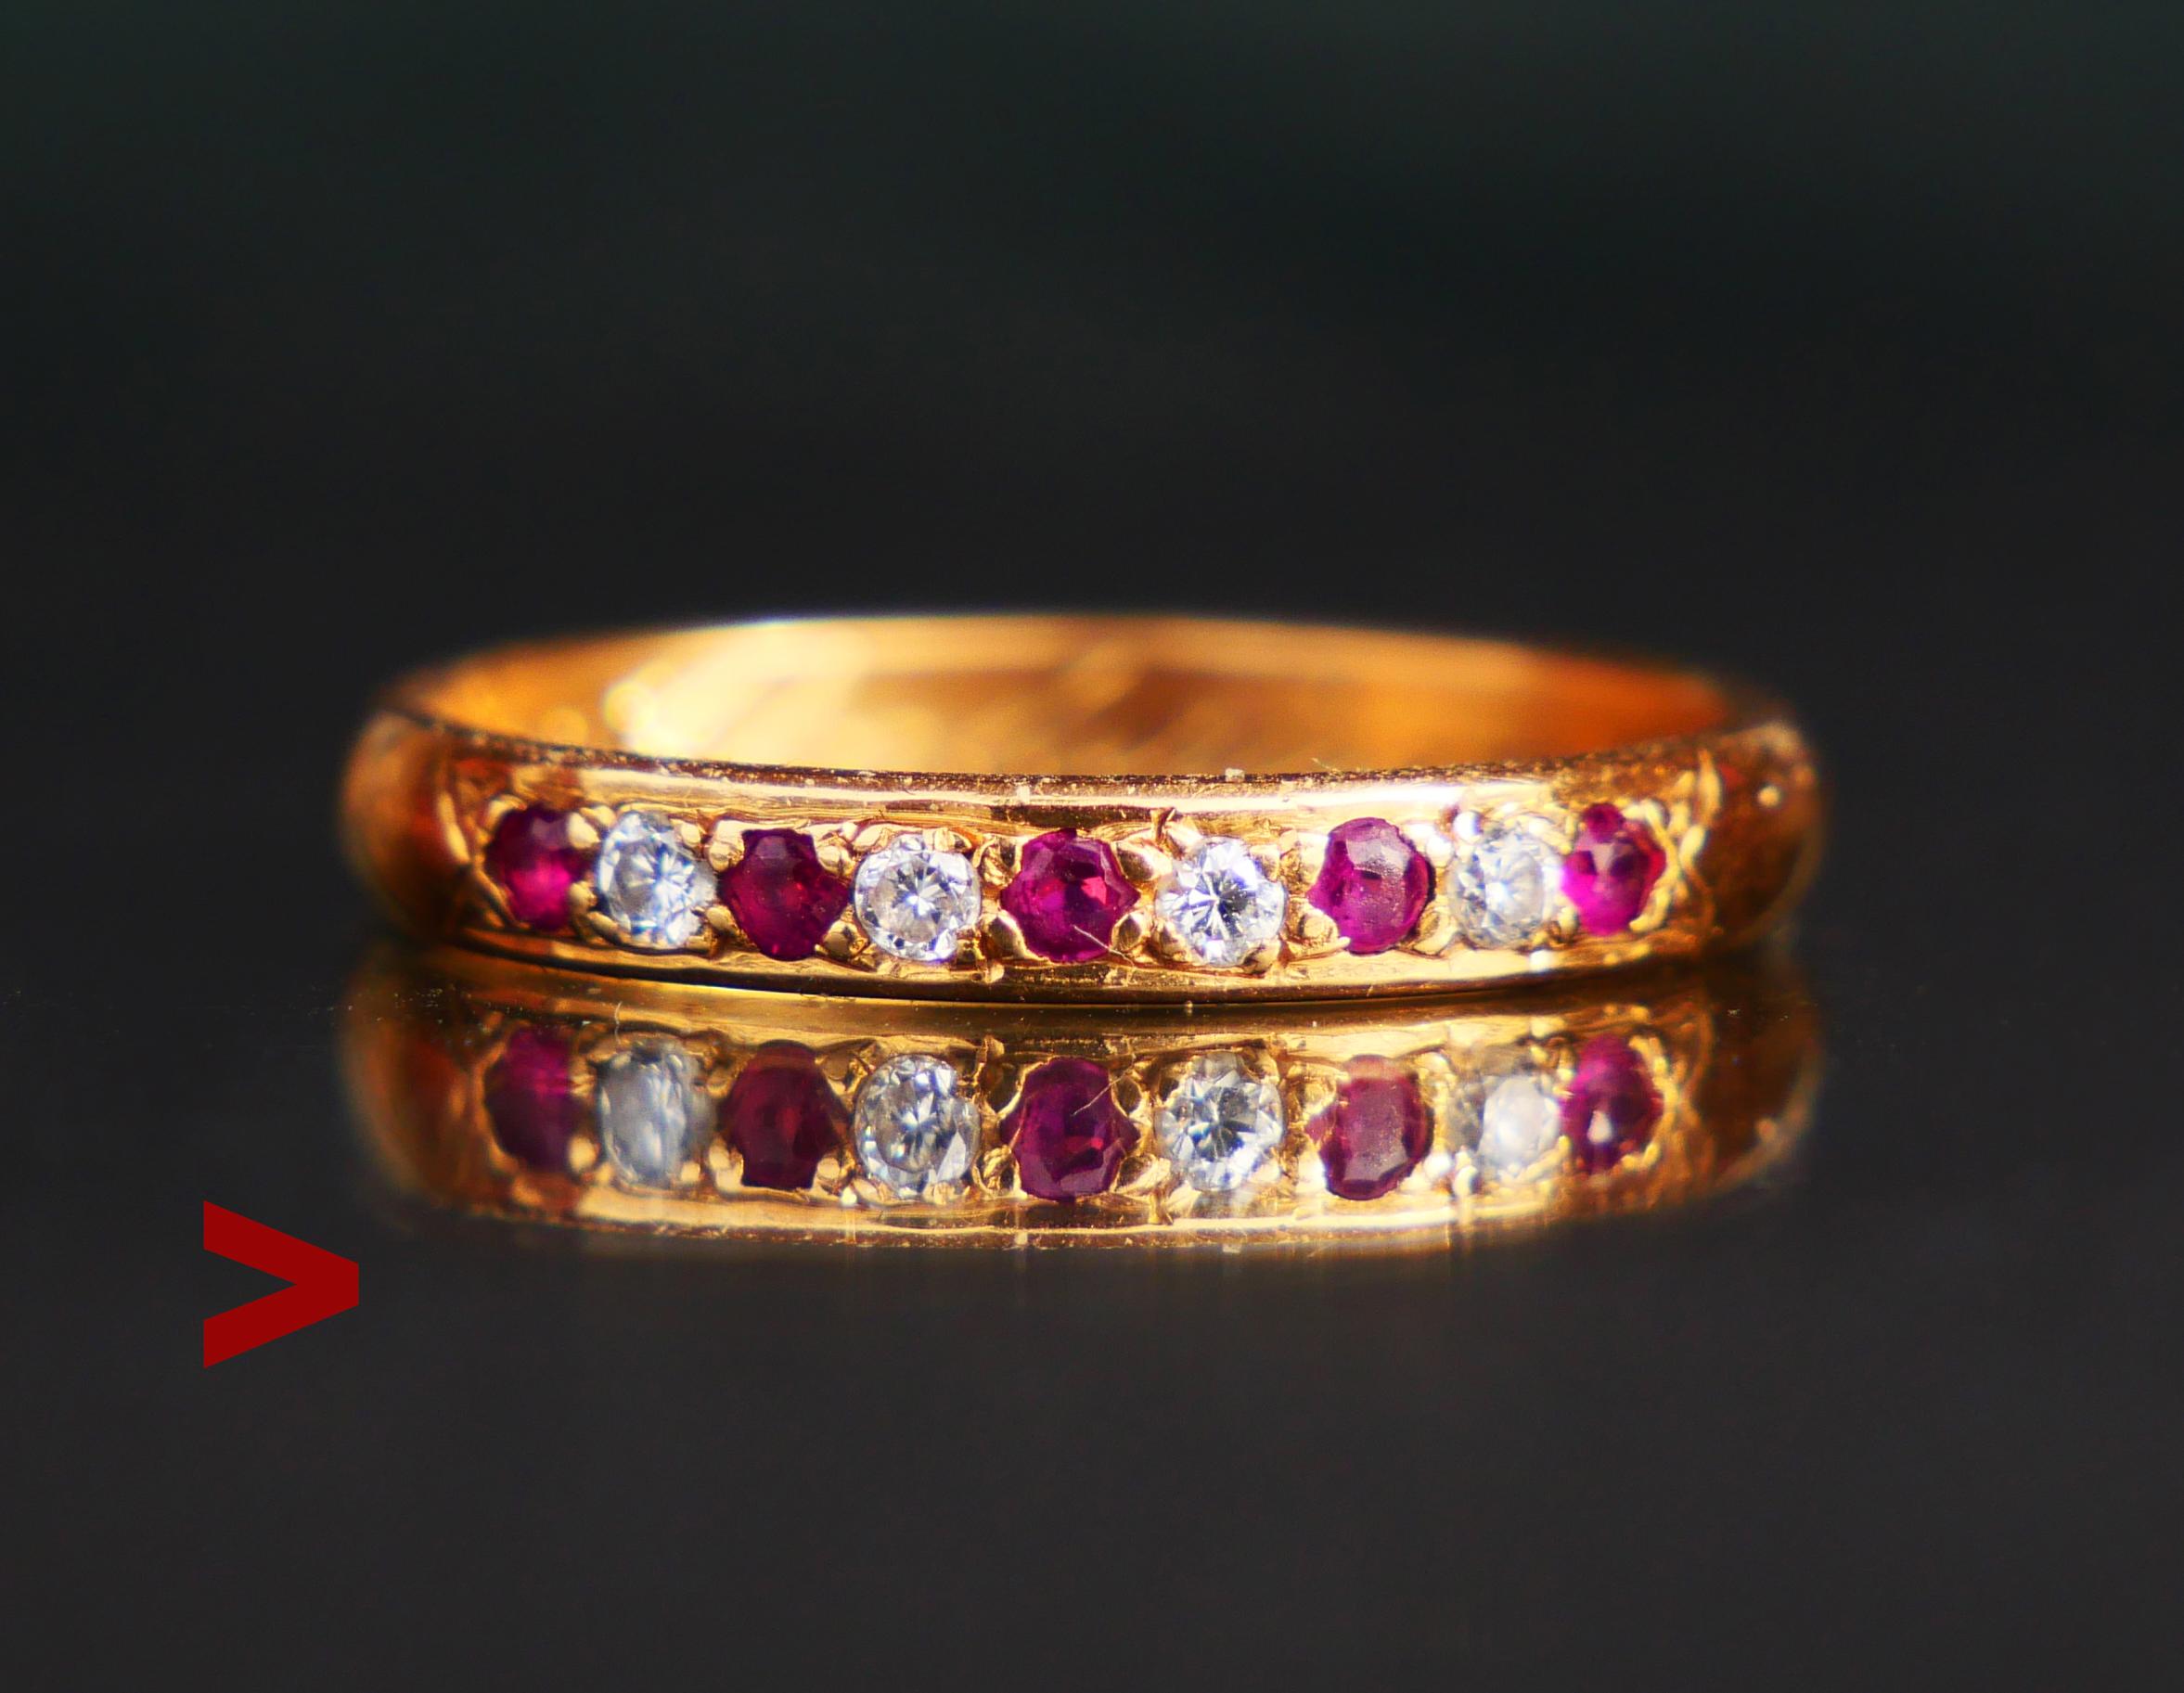 Bague Alliance en or jaune 18 carats avec 9 diamants et rubis taille brillant en pavage Ø 1.75 mm / ca 0.02ct. chacun. Couleur des diamants ca. F,G / VVS. Toutes les pierres ont un dos ouvert. Bague unique, faite à la main et sur mesure.
Poinçons